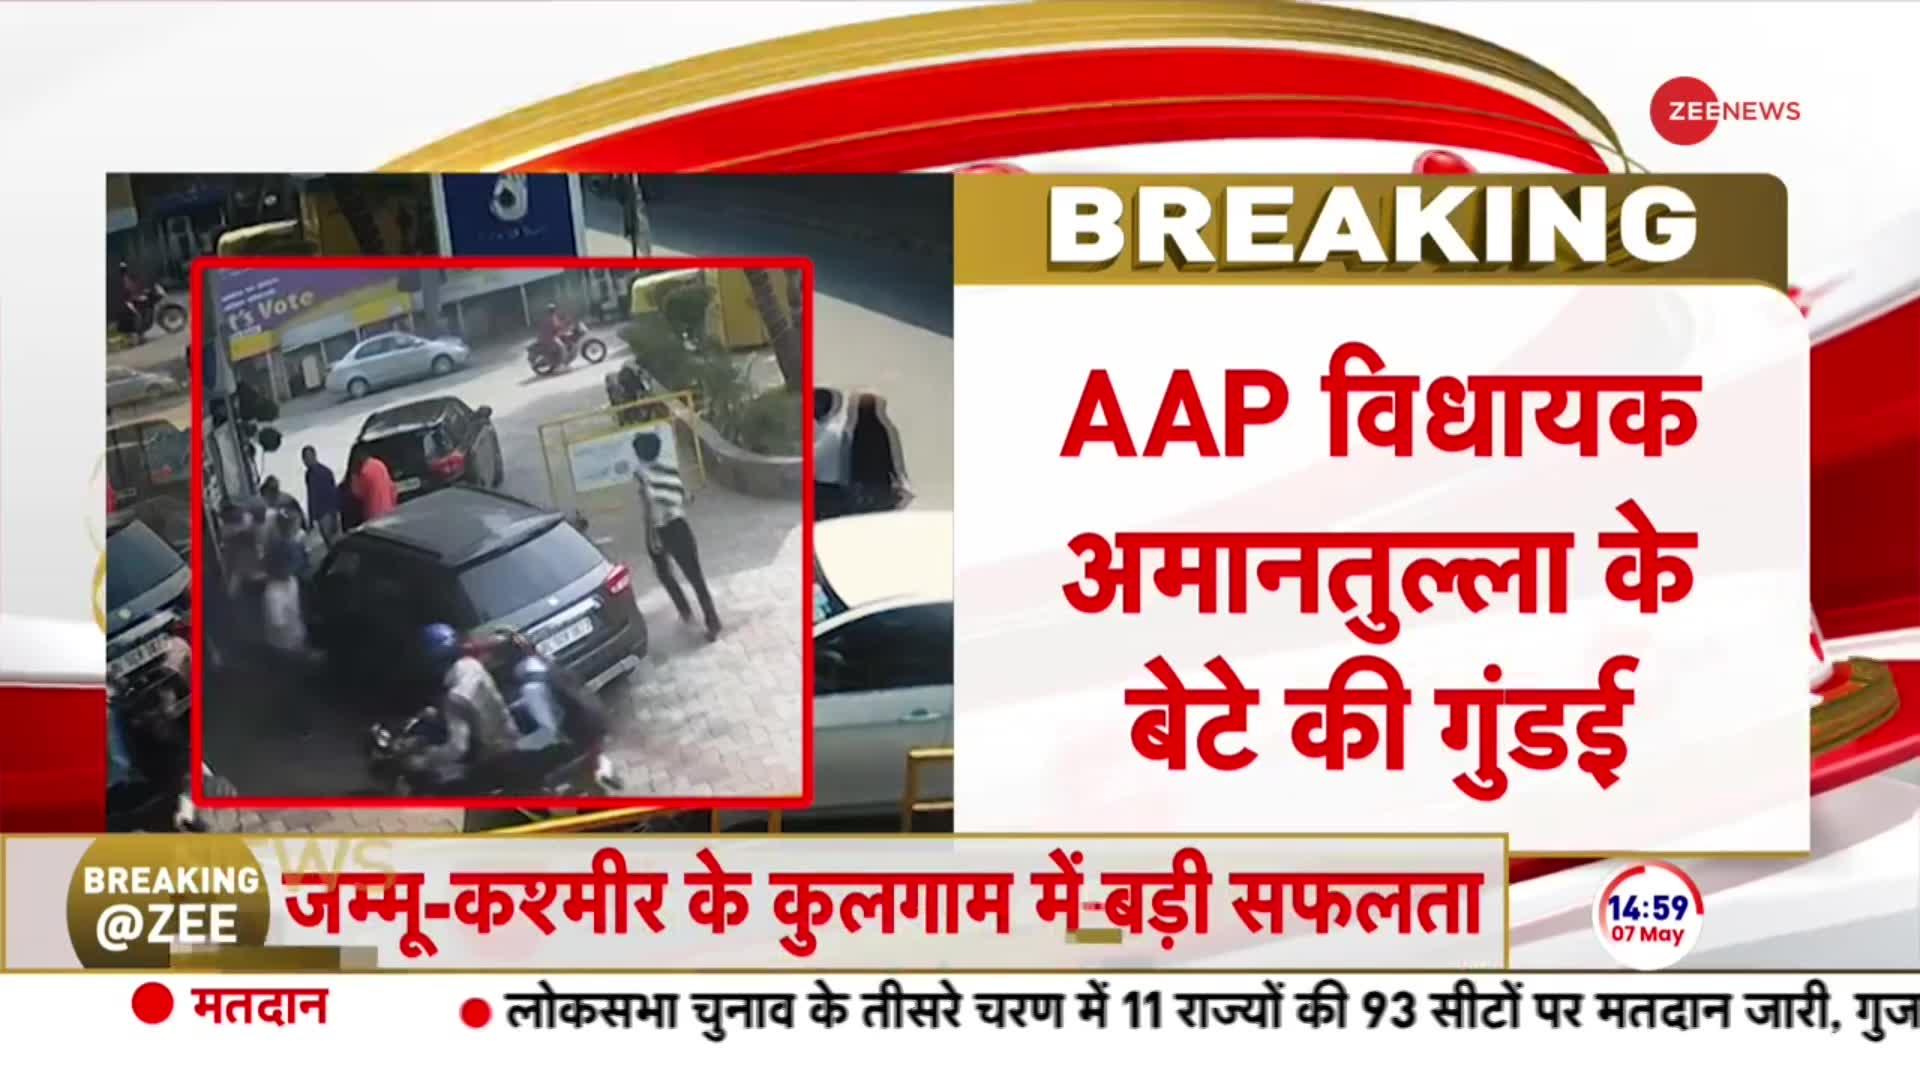 Breaking News: AAP विधायक के बेटे की गुंडागर्दी वायरल